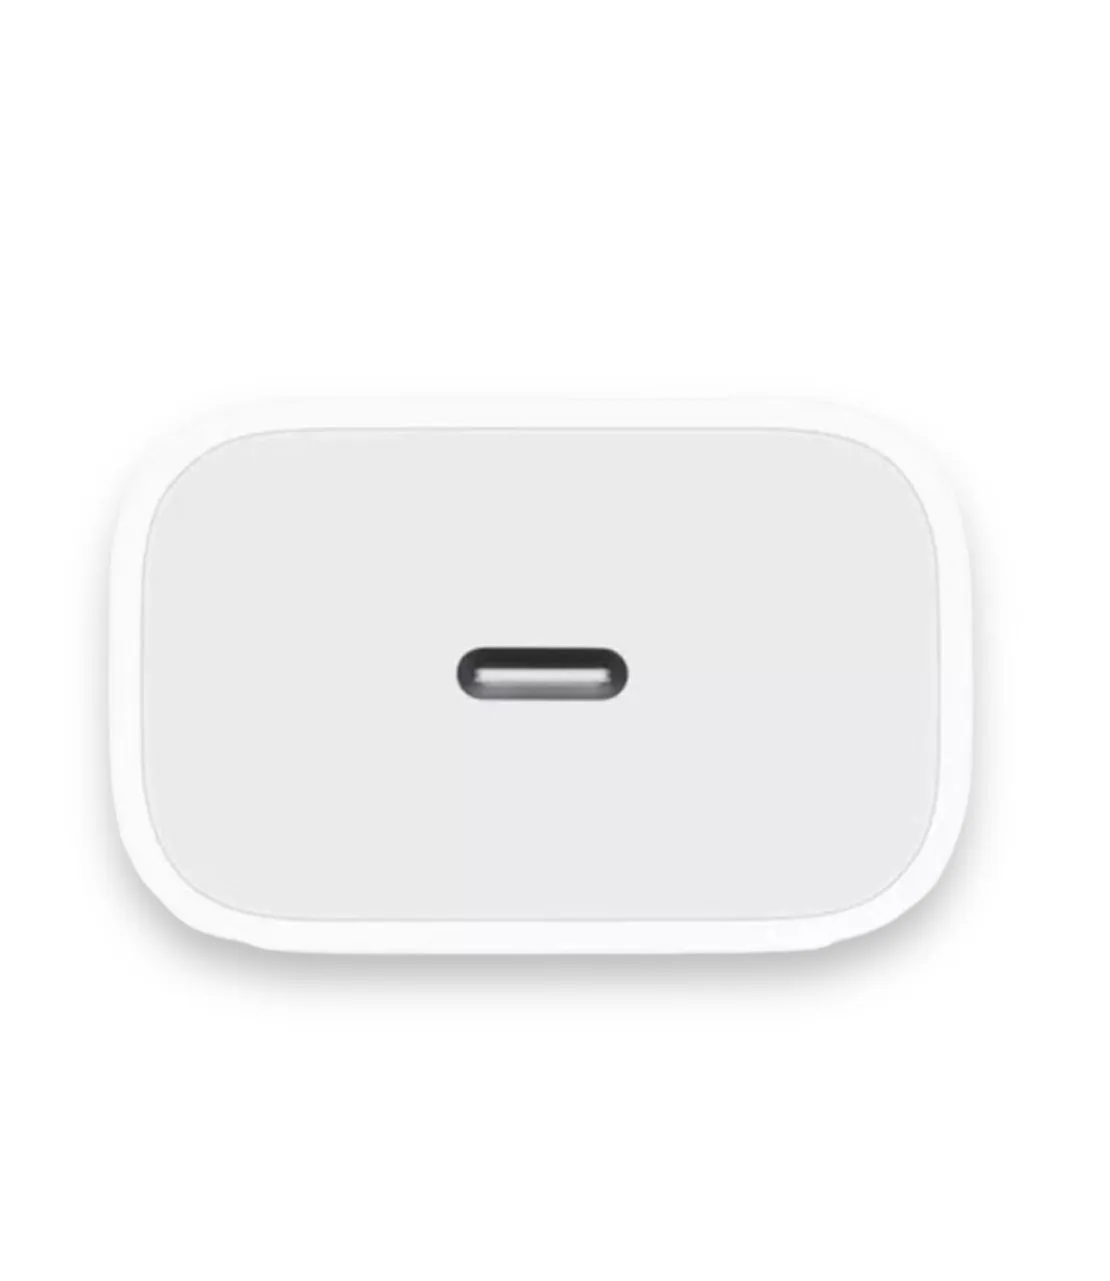 Cargador iPhone 11 Apple/25w + Cable 1Metro - Luegopago